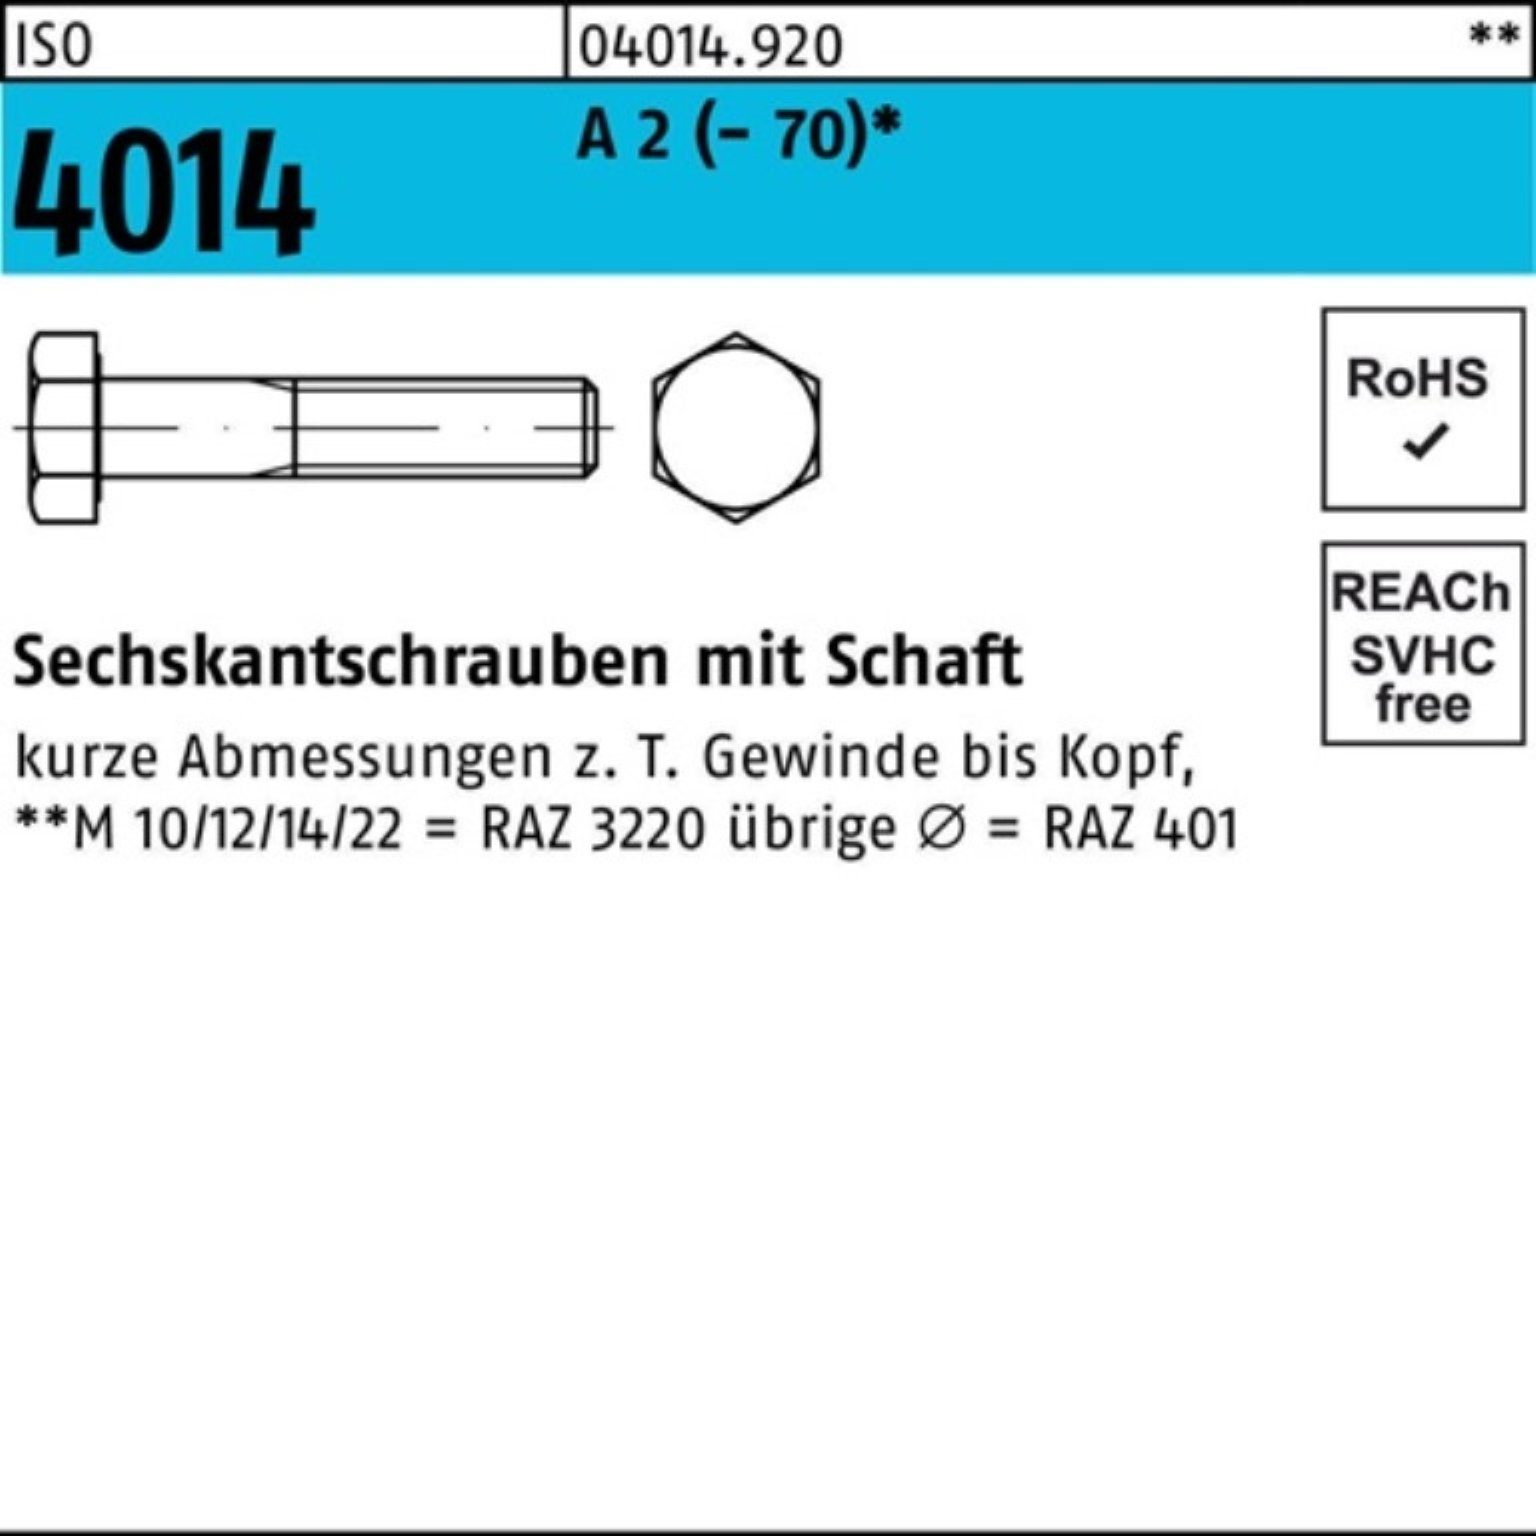 Bufab Sechskantschraube 100er Pack Sechskantschraube ISO 4014 Schaft M18x 90 A 2 (70) 25 St